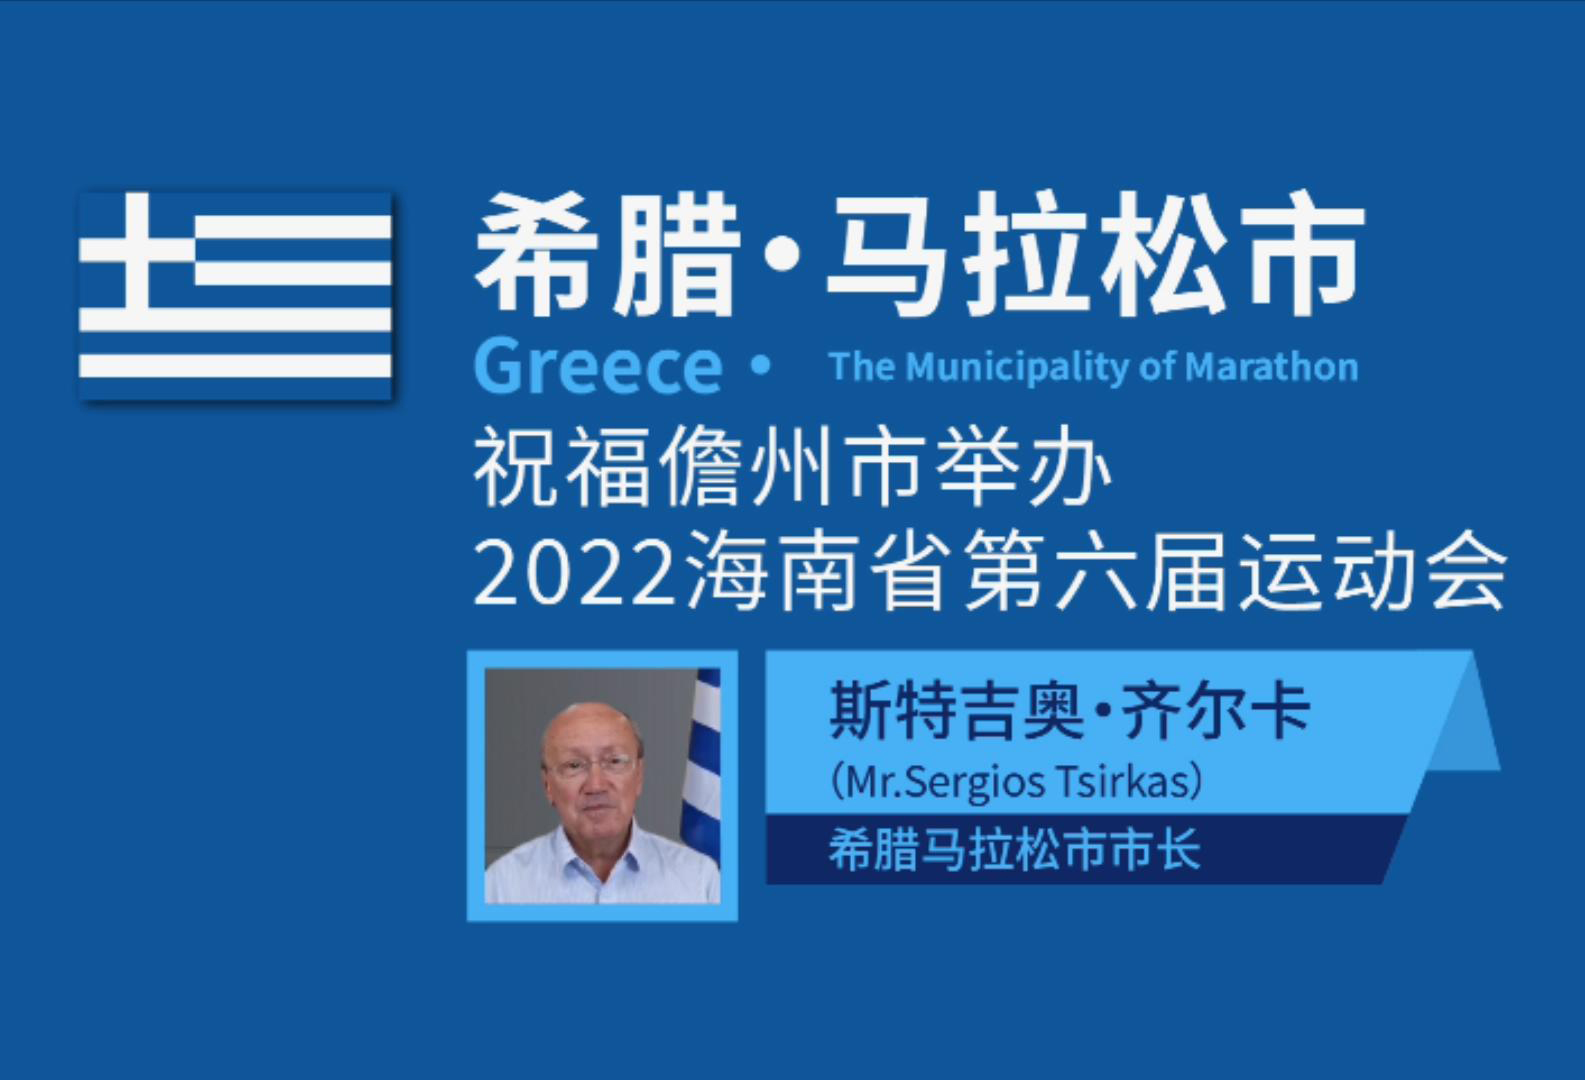 儋州市国际友好城市希腊·马拉松市为海南省第六届运动会送上祝福